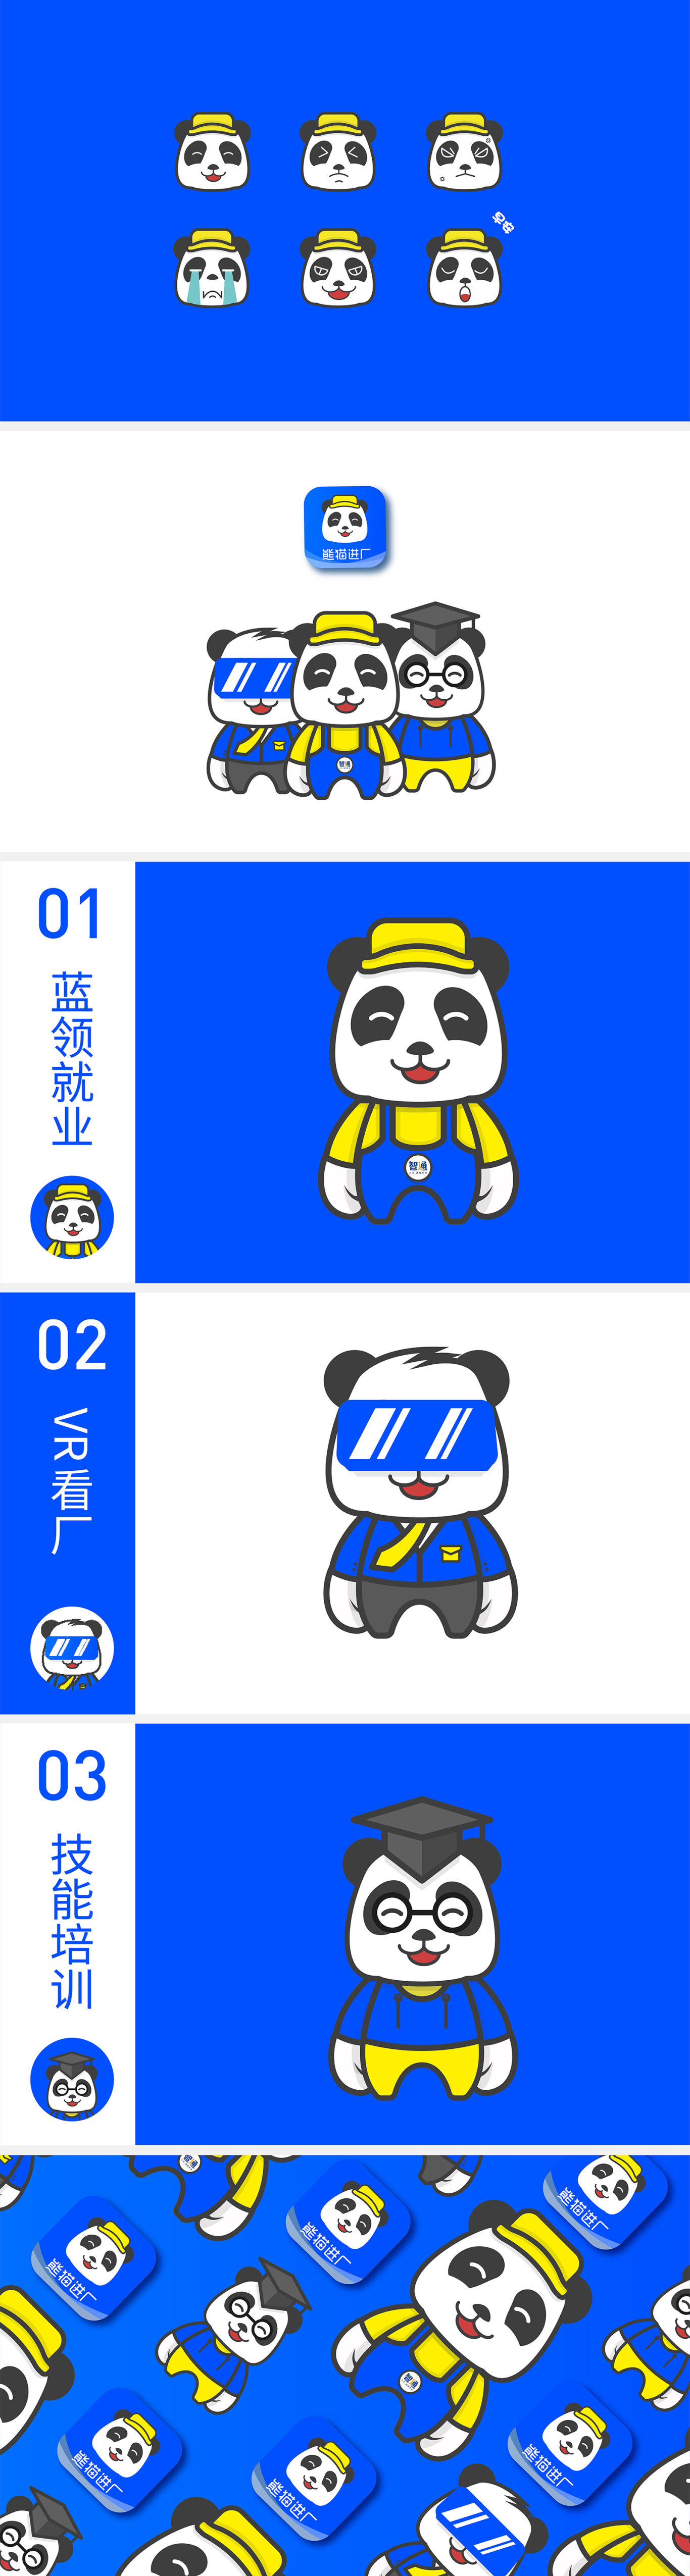 熊貓進廠企業藍領就業服務的平臺 logo圖1